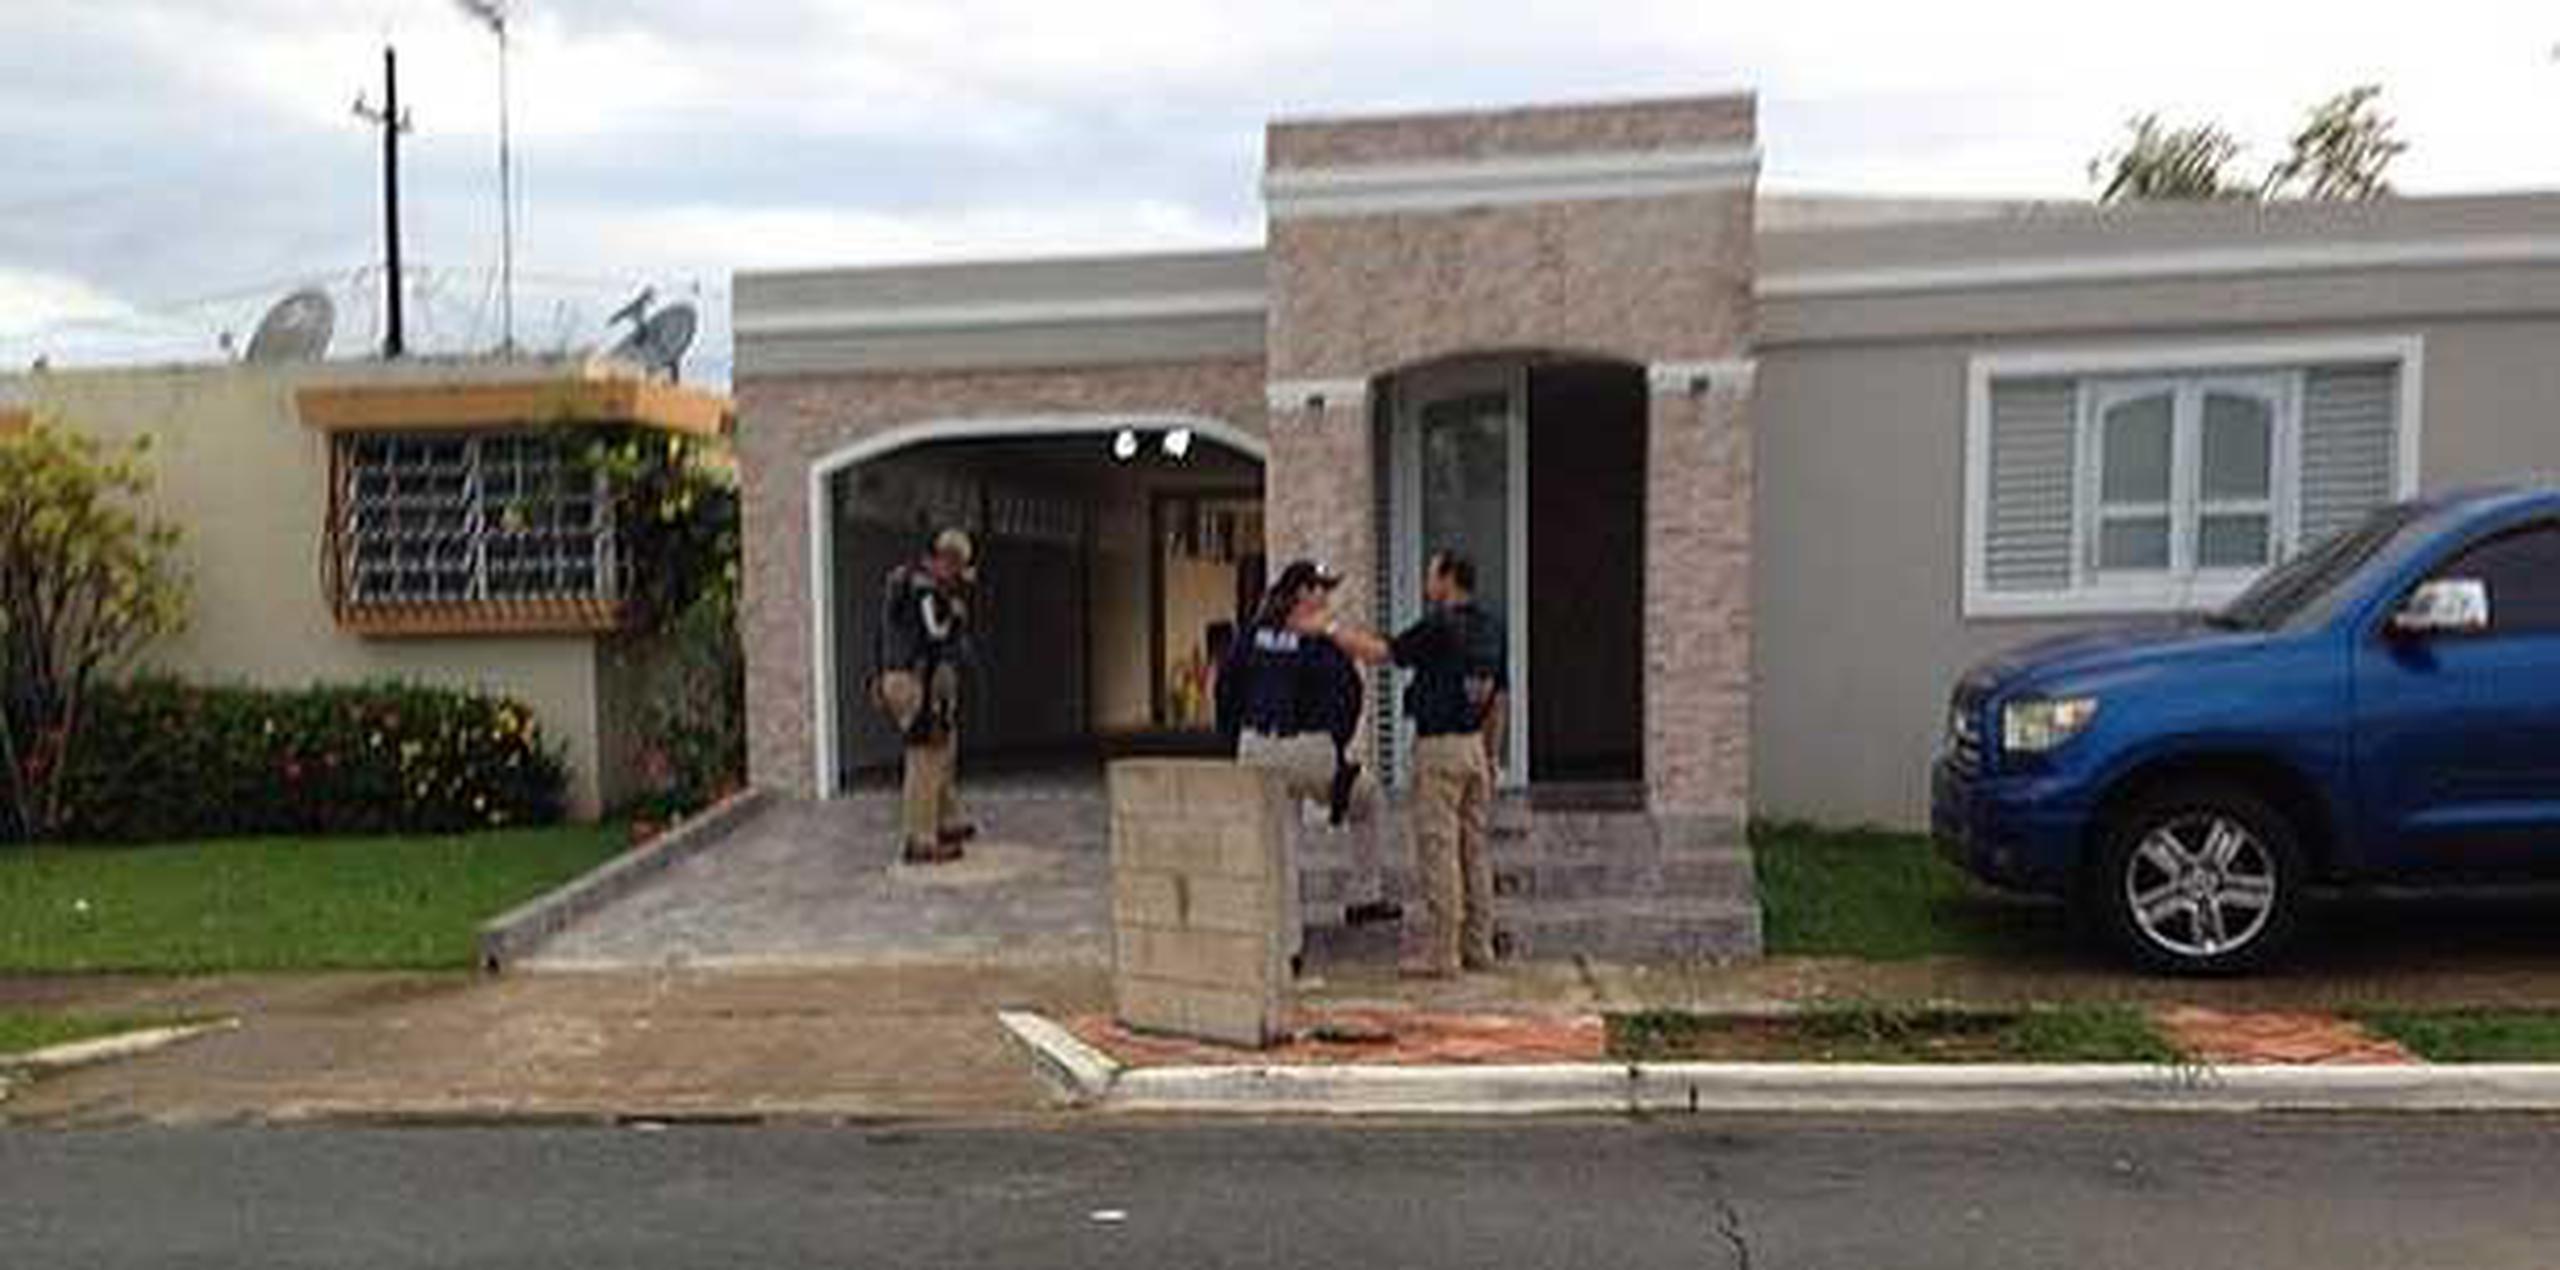 Uno de los arrestos se realizó en una residencia de la urbanización Country Club, en Río Piedras, frente a los medios de comunicación. (alex.figueroa@gfrmedia.com)